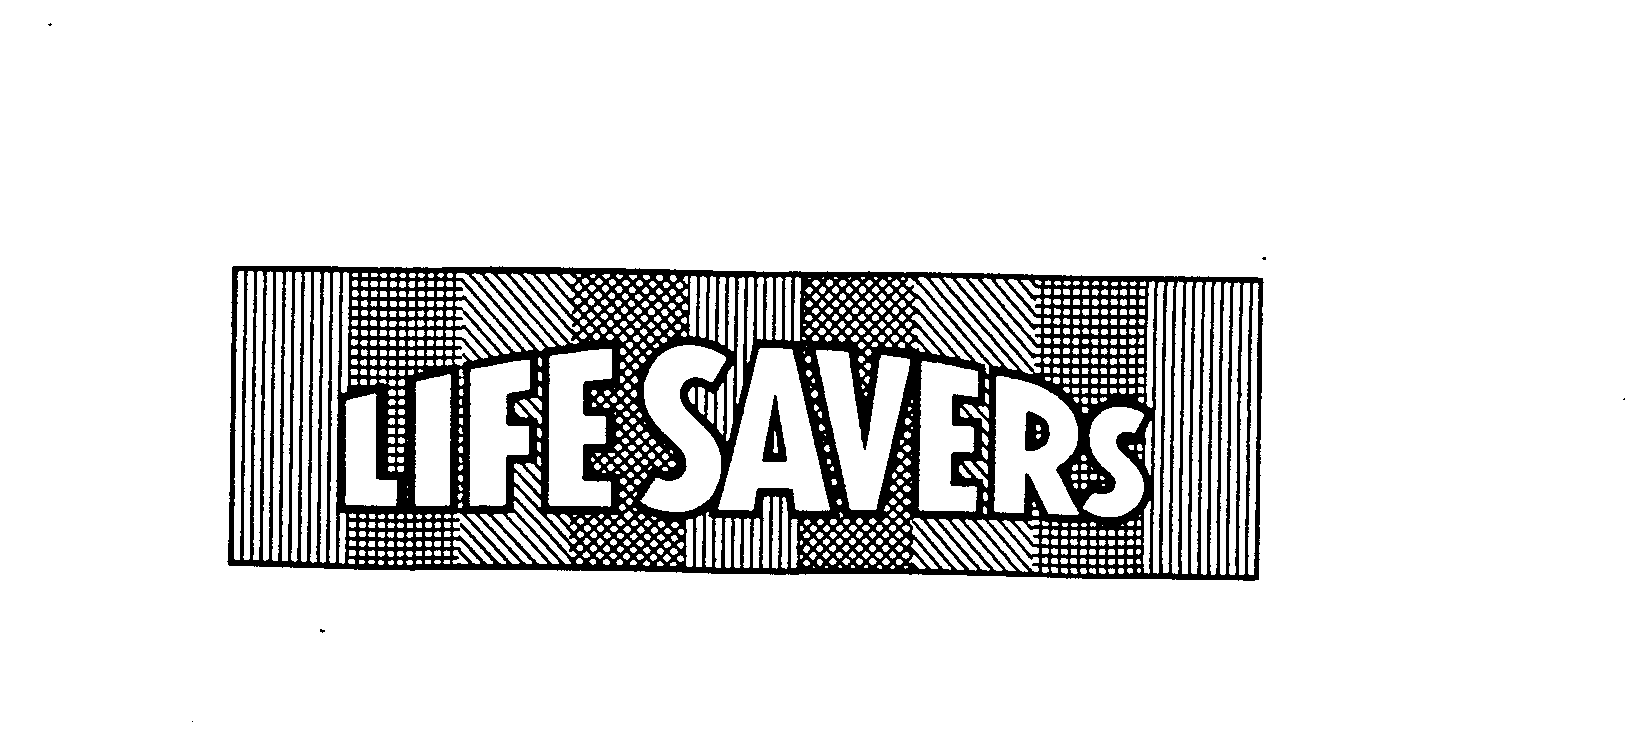 LIFE SAVERS